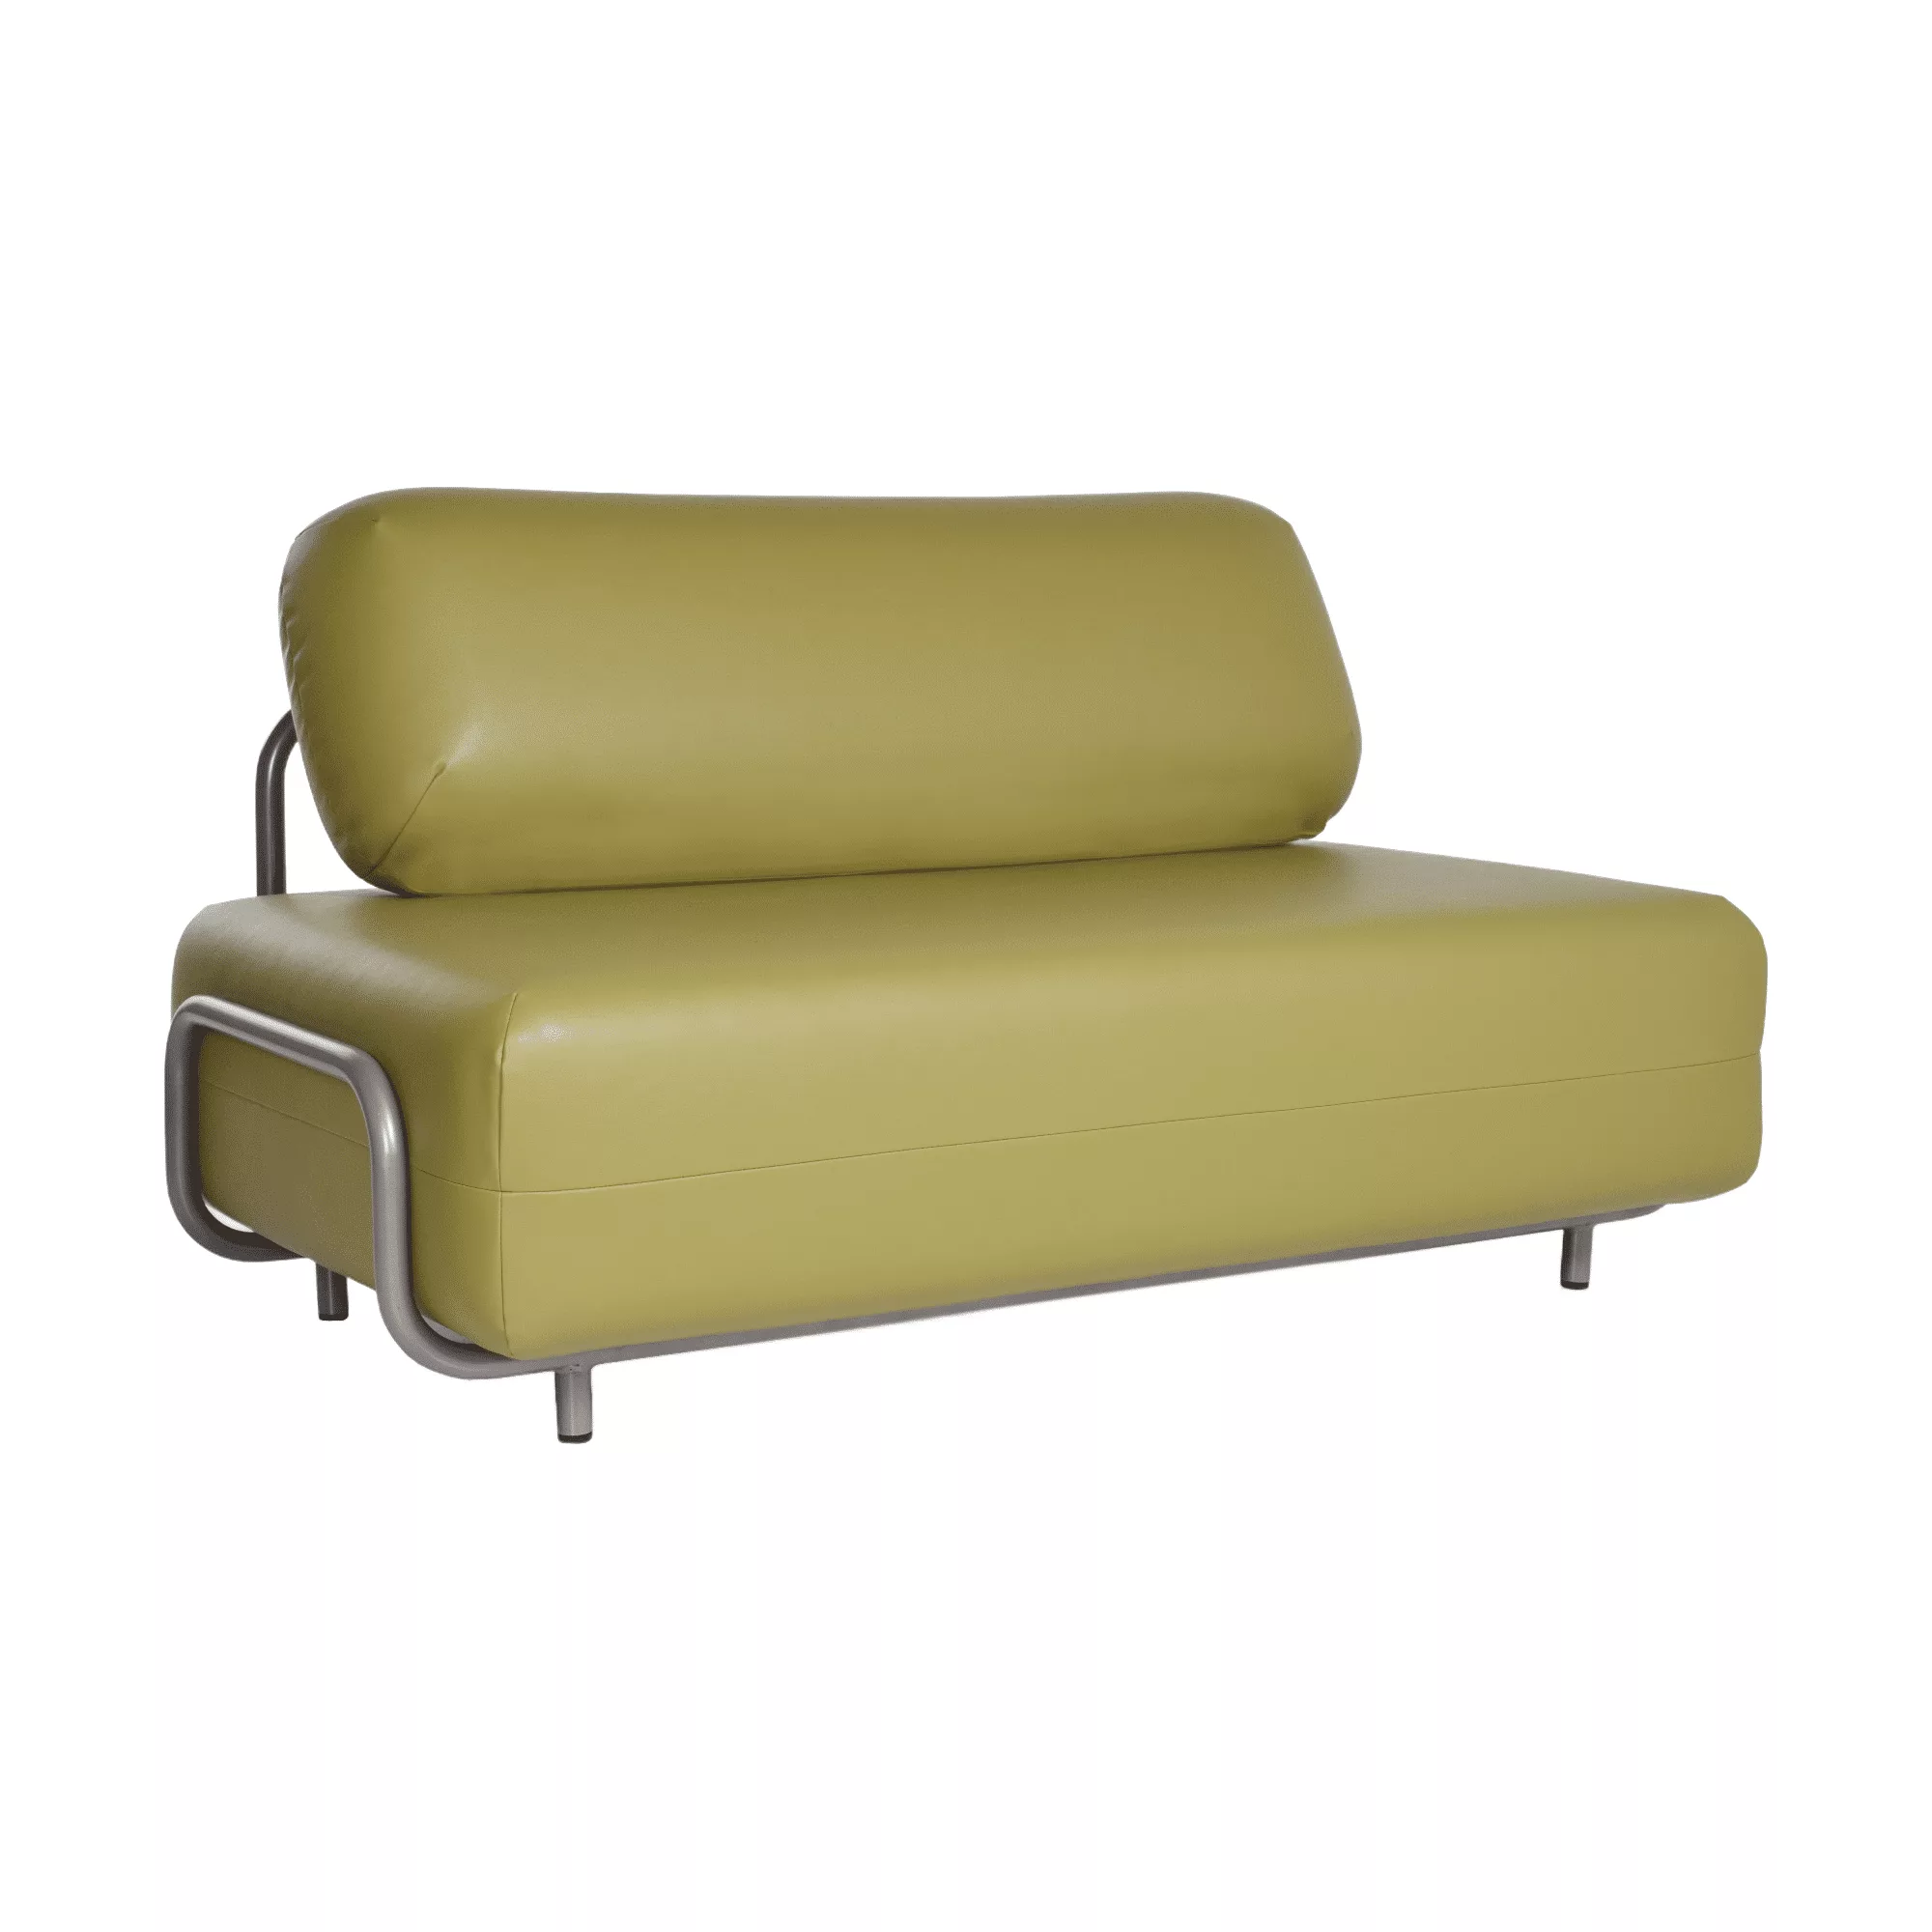 Groene retro design sofa met groen metalen onderstel.